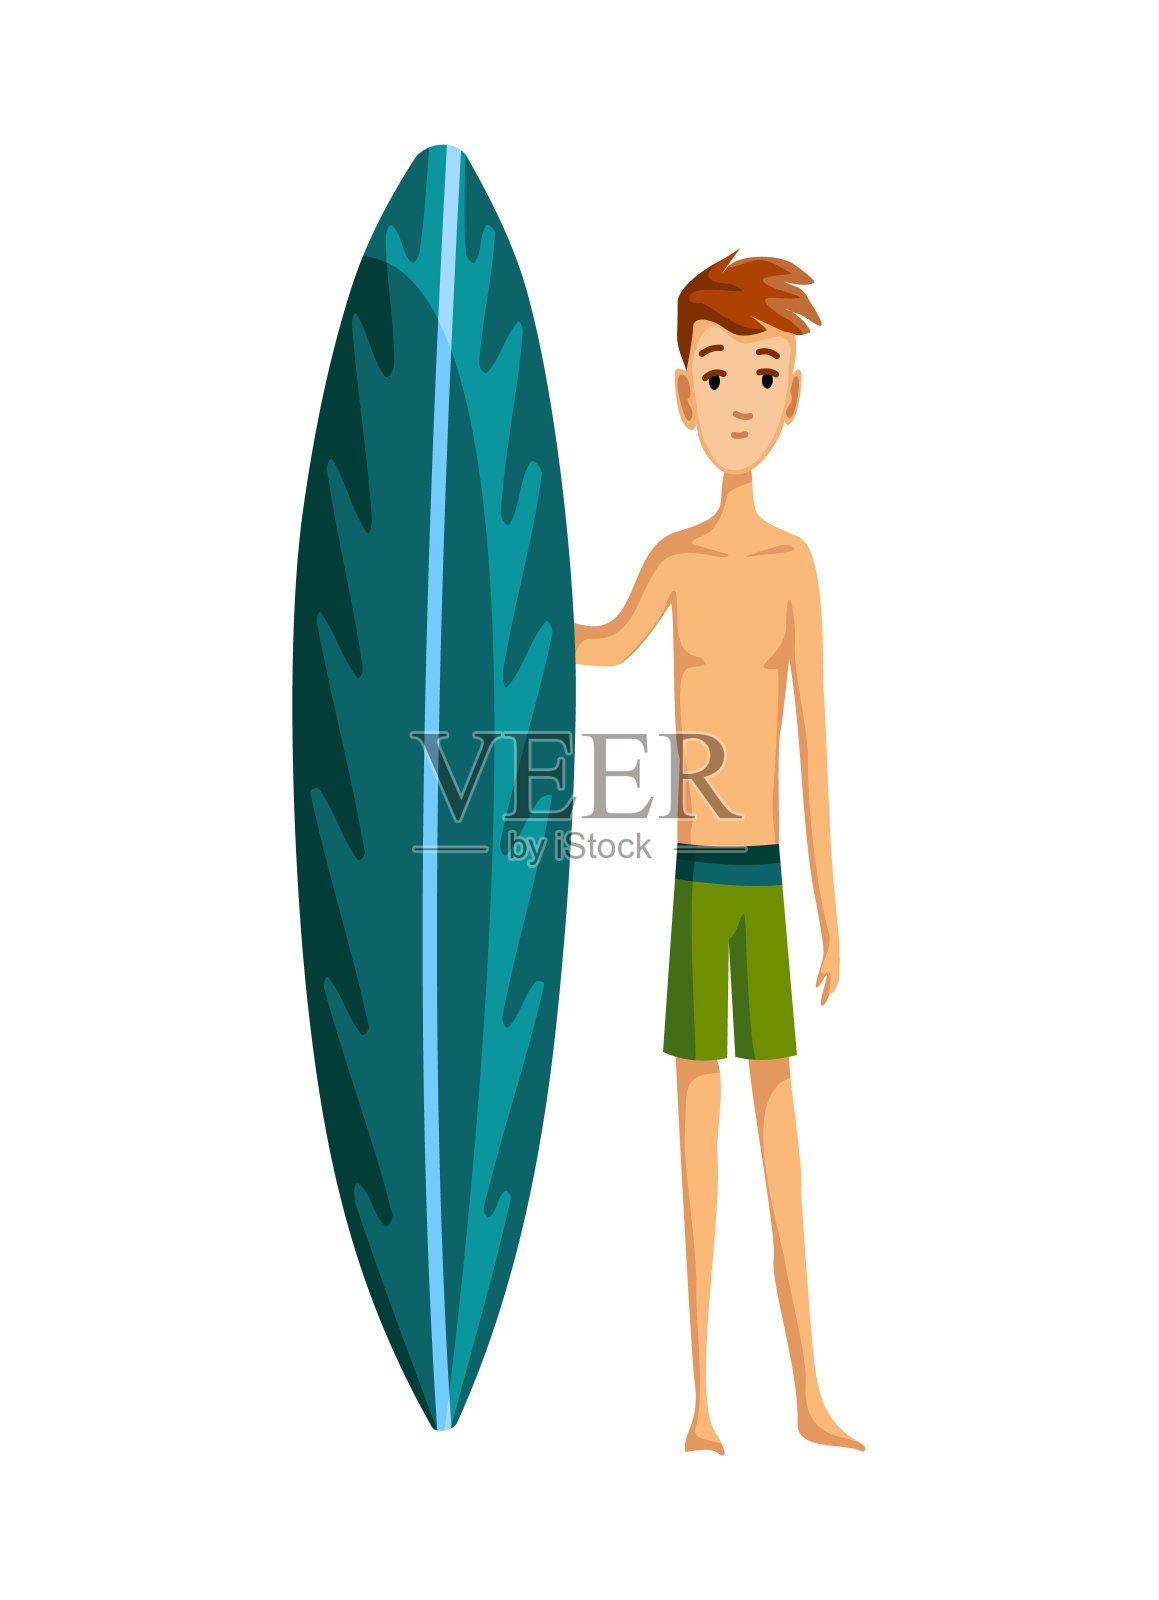 夏天的海滩活动。一个拿着冲浪板的人。海滩度假。卡通风格设计元素图片